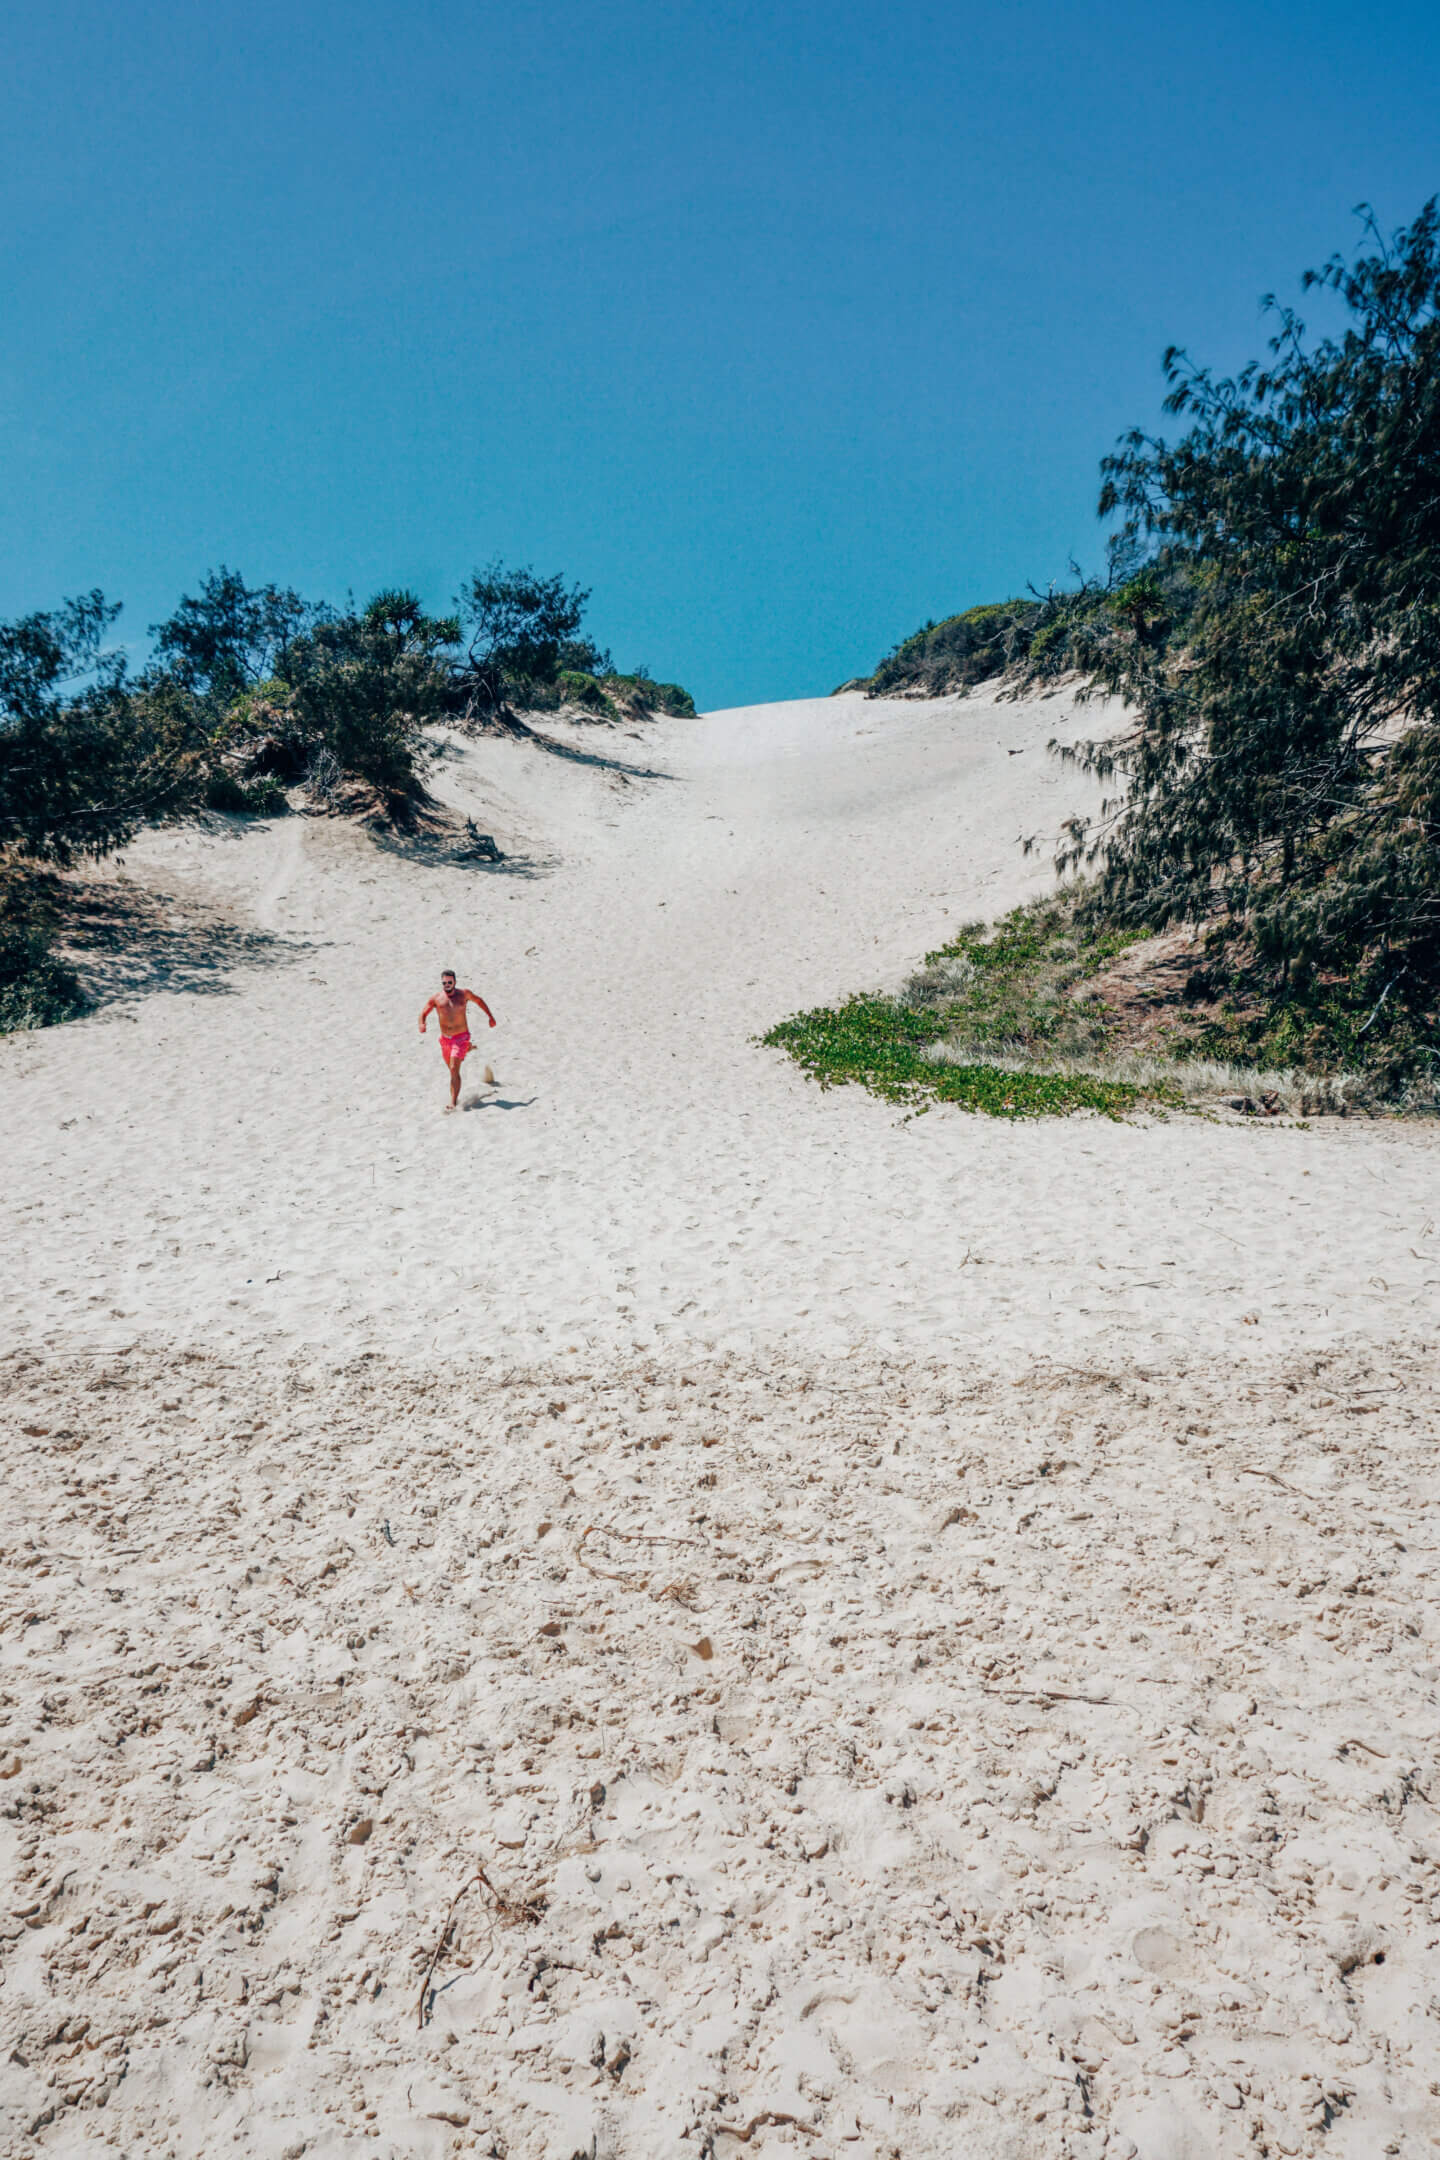 A man running down a sand dune